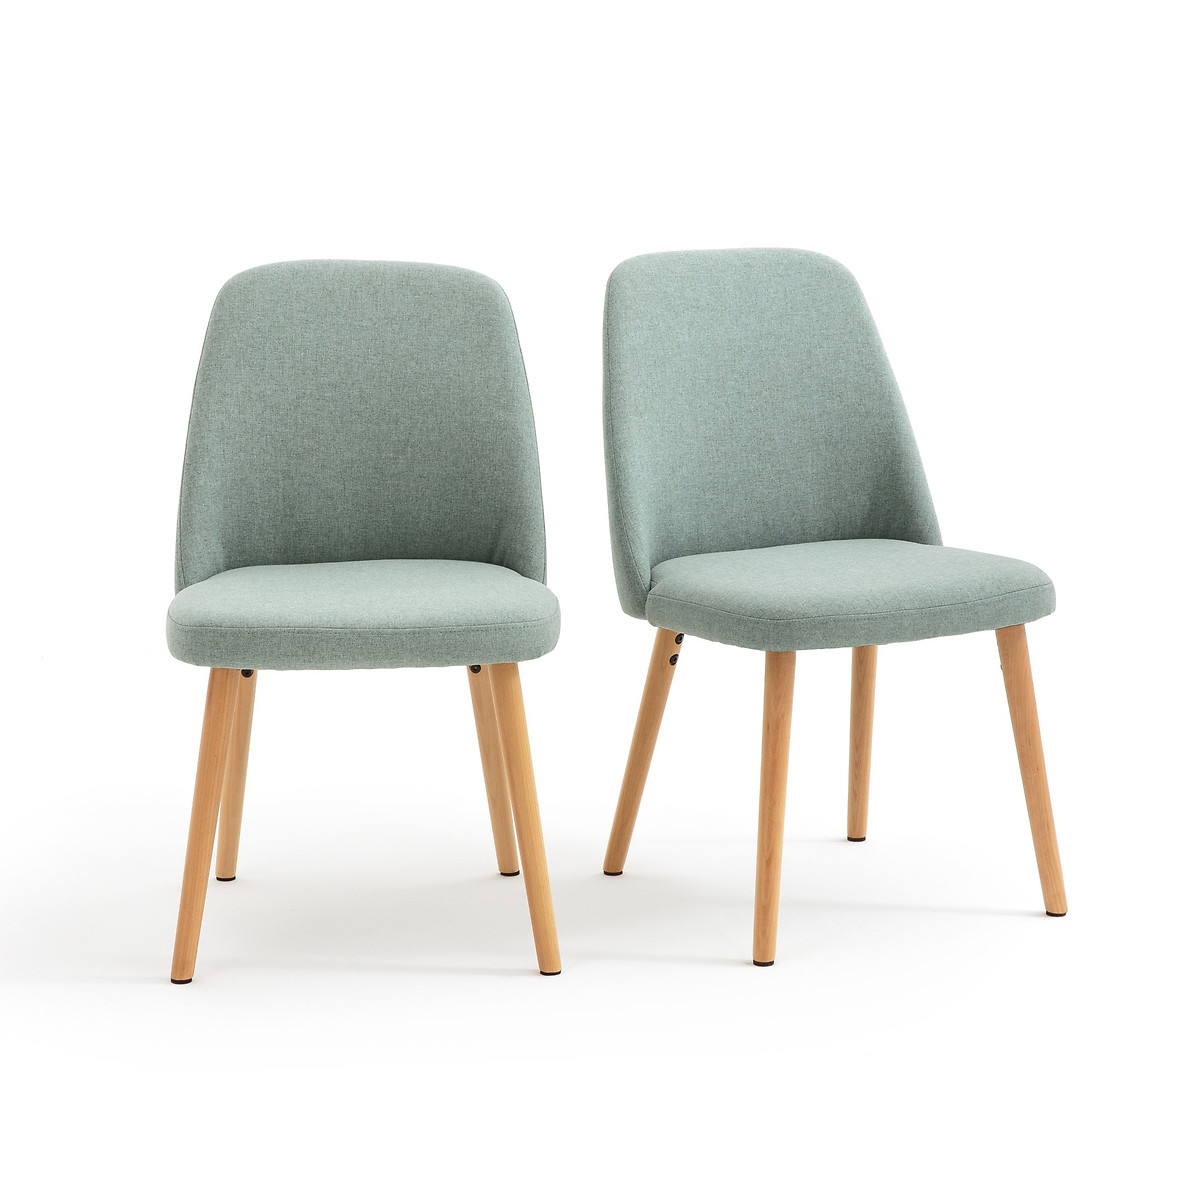 Комплект из 2 стульев, Jimi La Redoute единый размер зеленый комплект из 2 стульев galb la redoute комплект из 2 бежевый